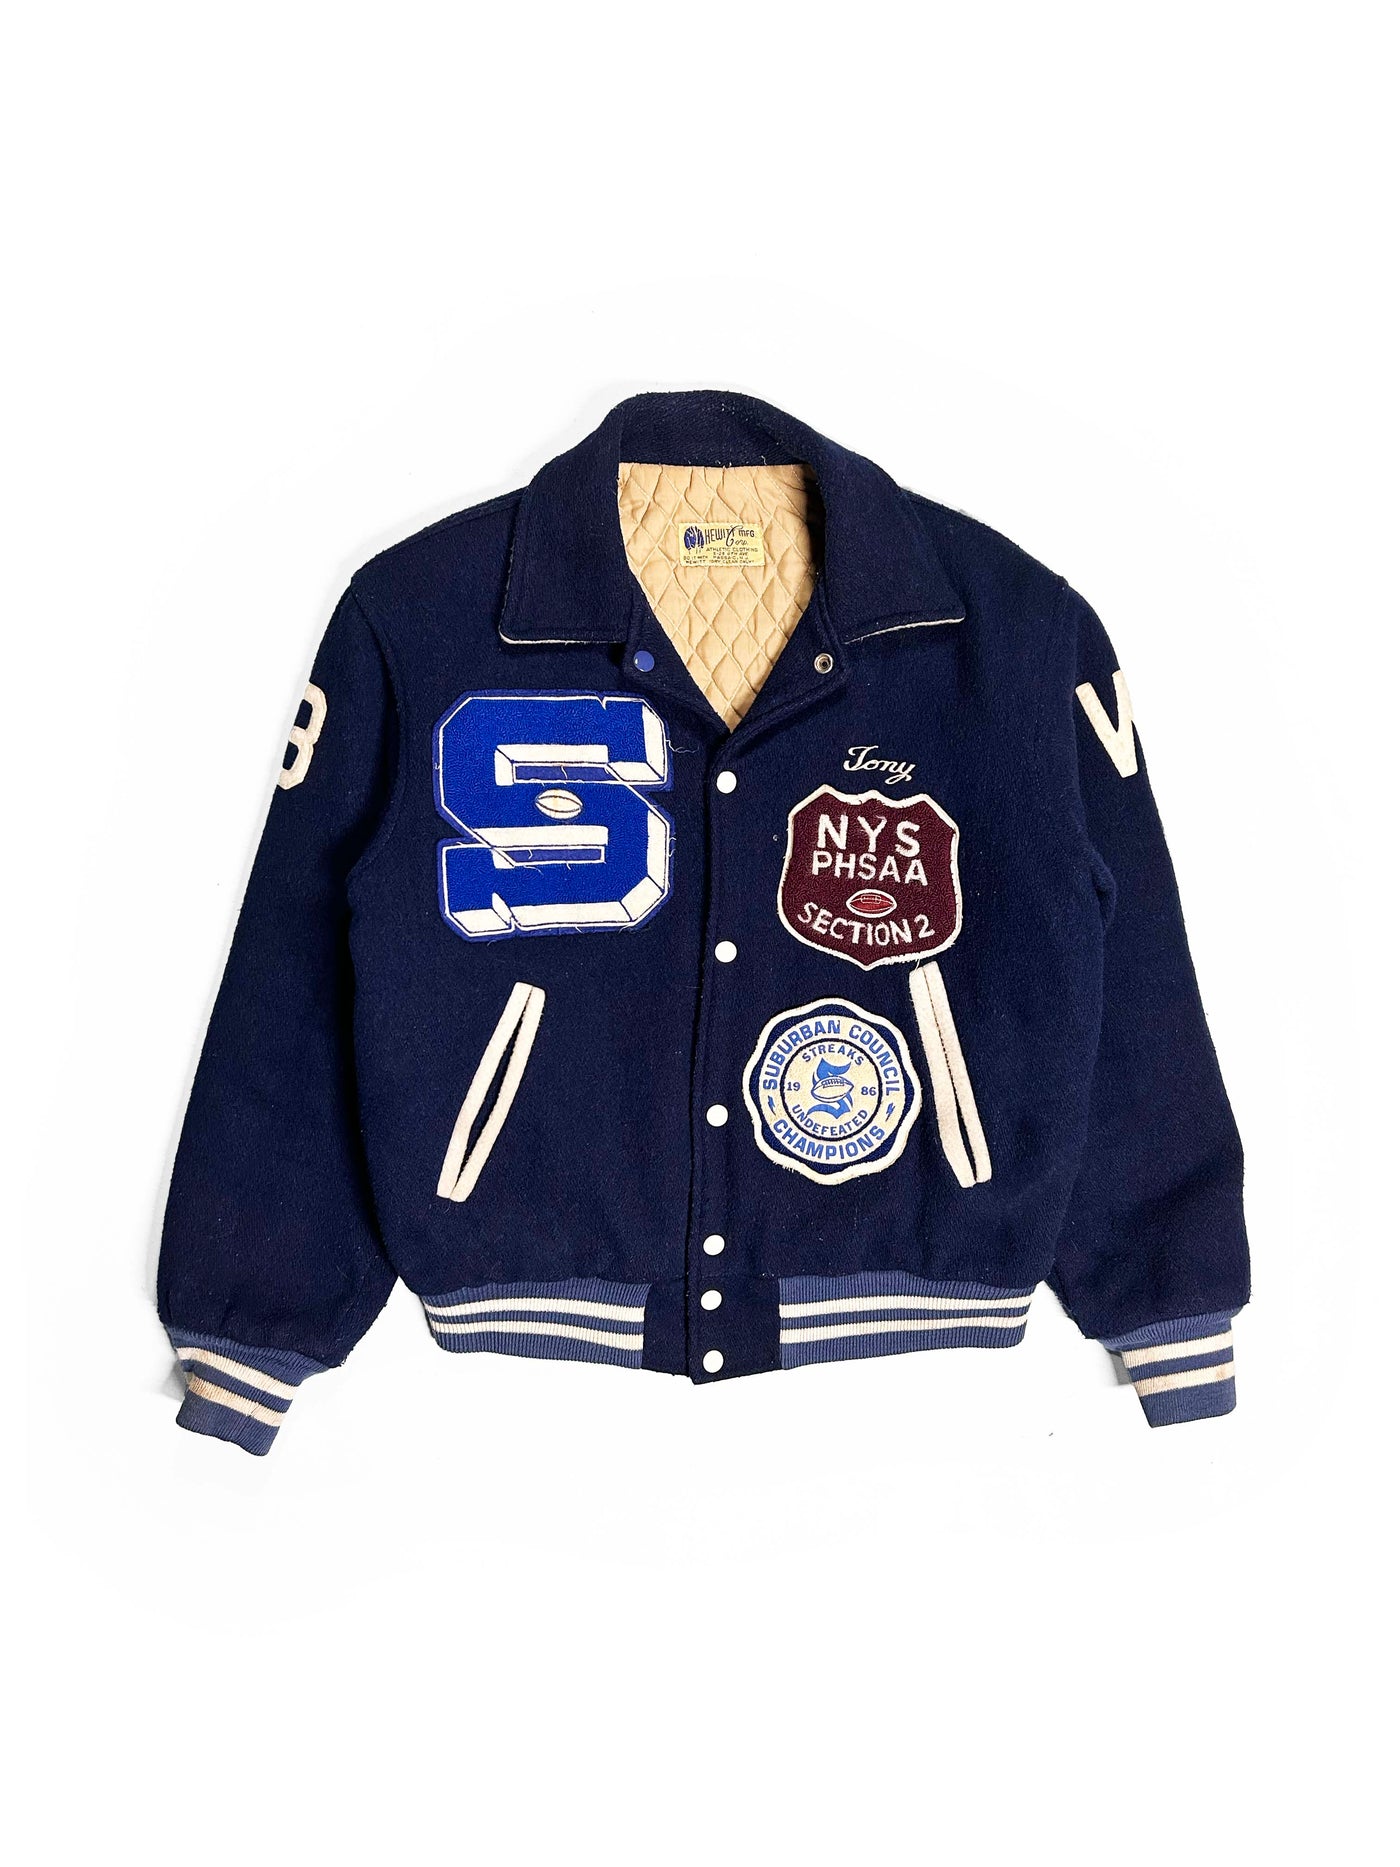 Vintage 1985 Saratoga Football Varsity Jacket